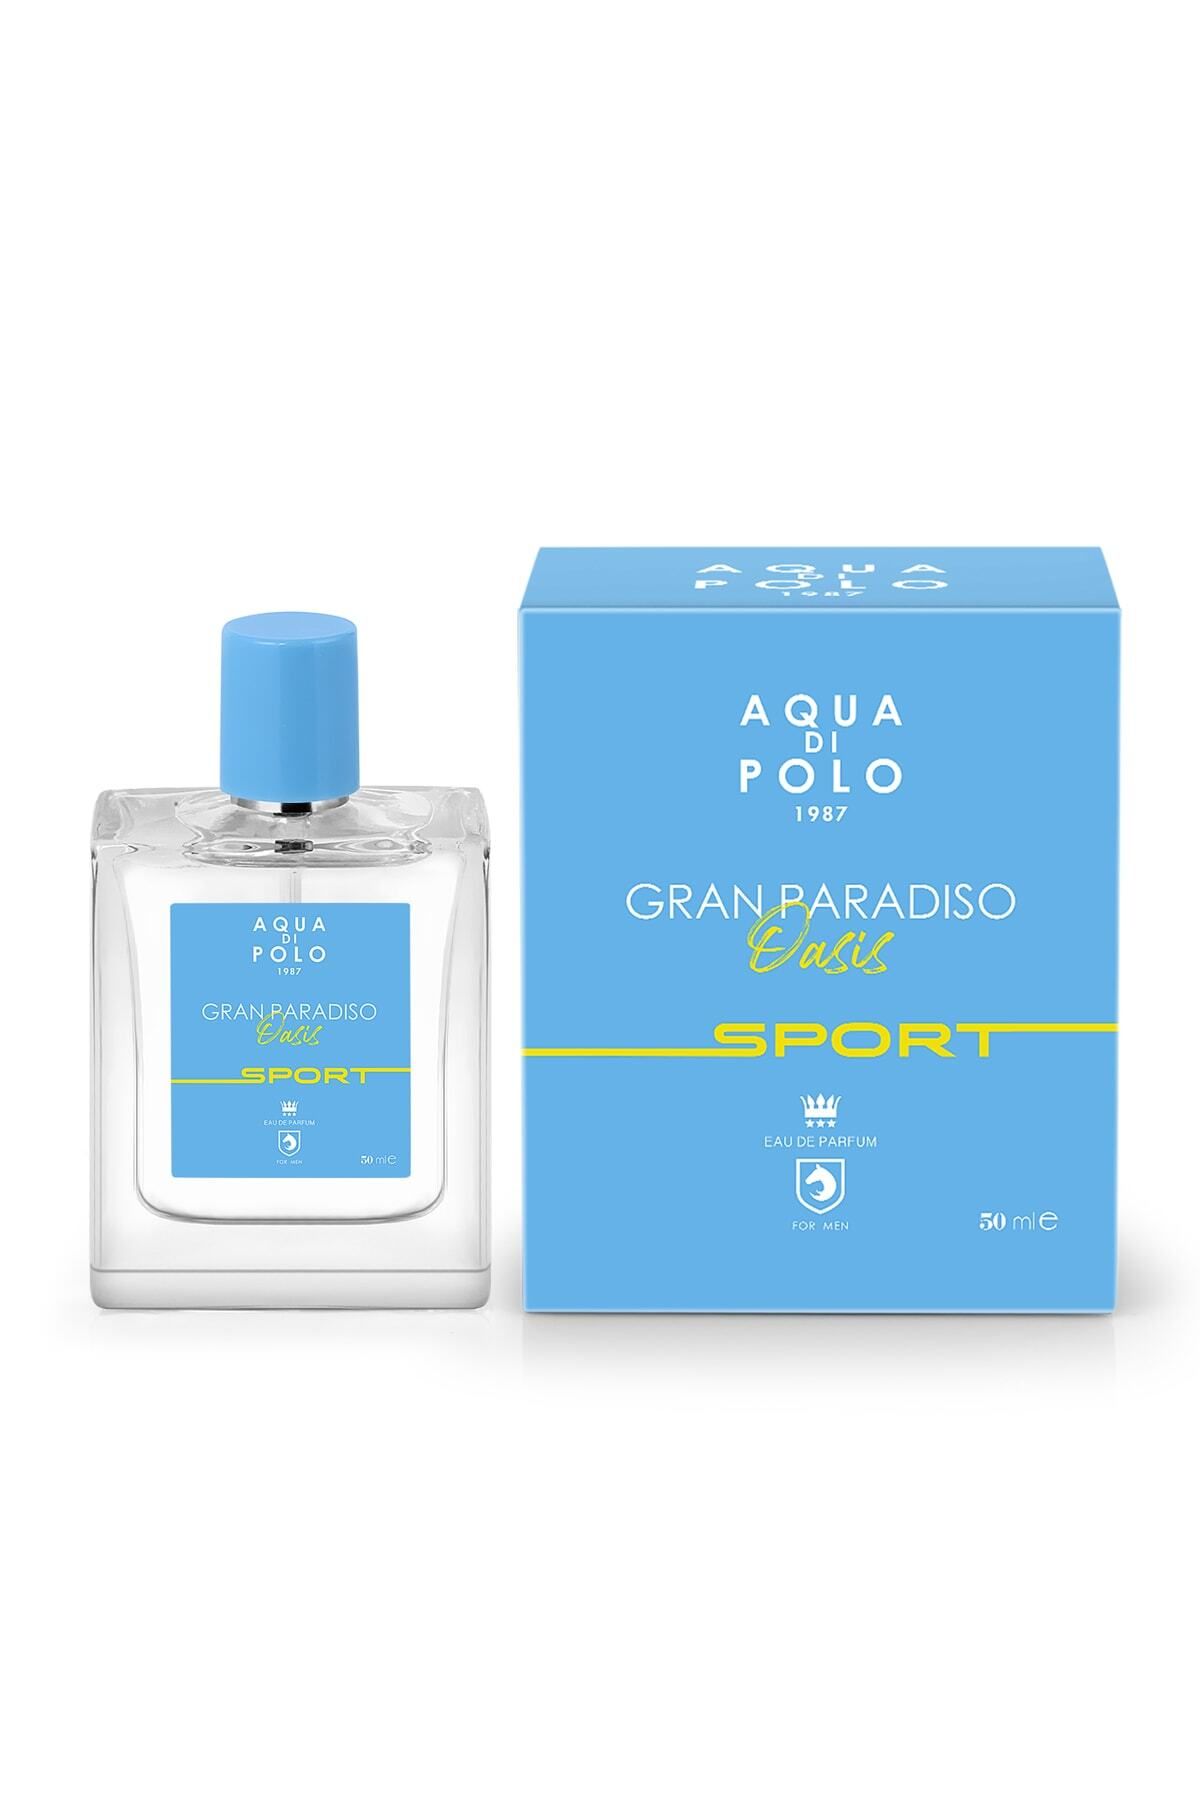 Aqua Di Polo 1987 Gran Paradiso Oasis Sport 50 Ml Erkek Edp Apcn000511